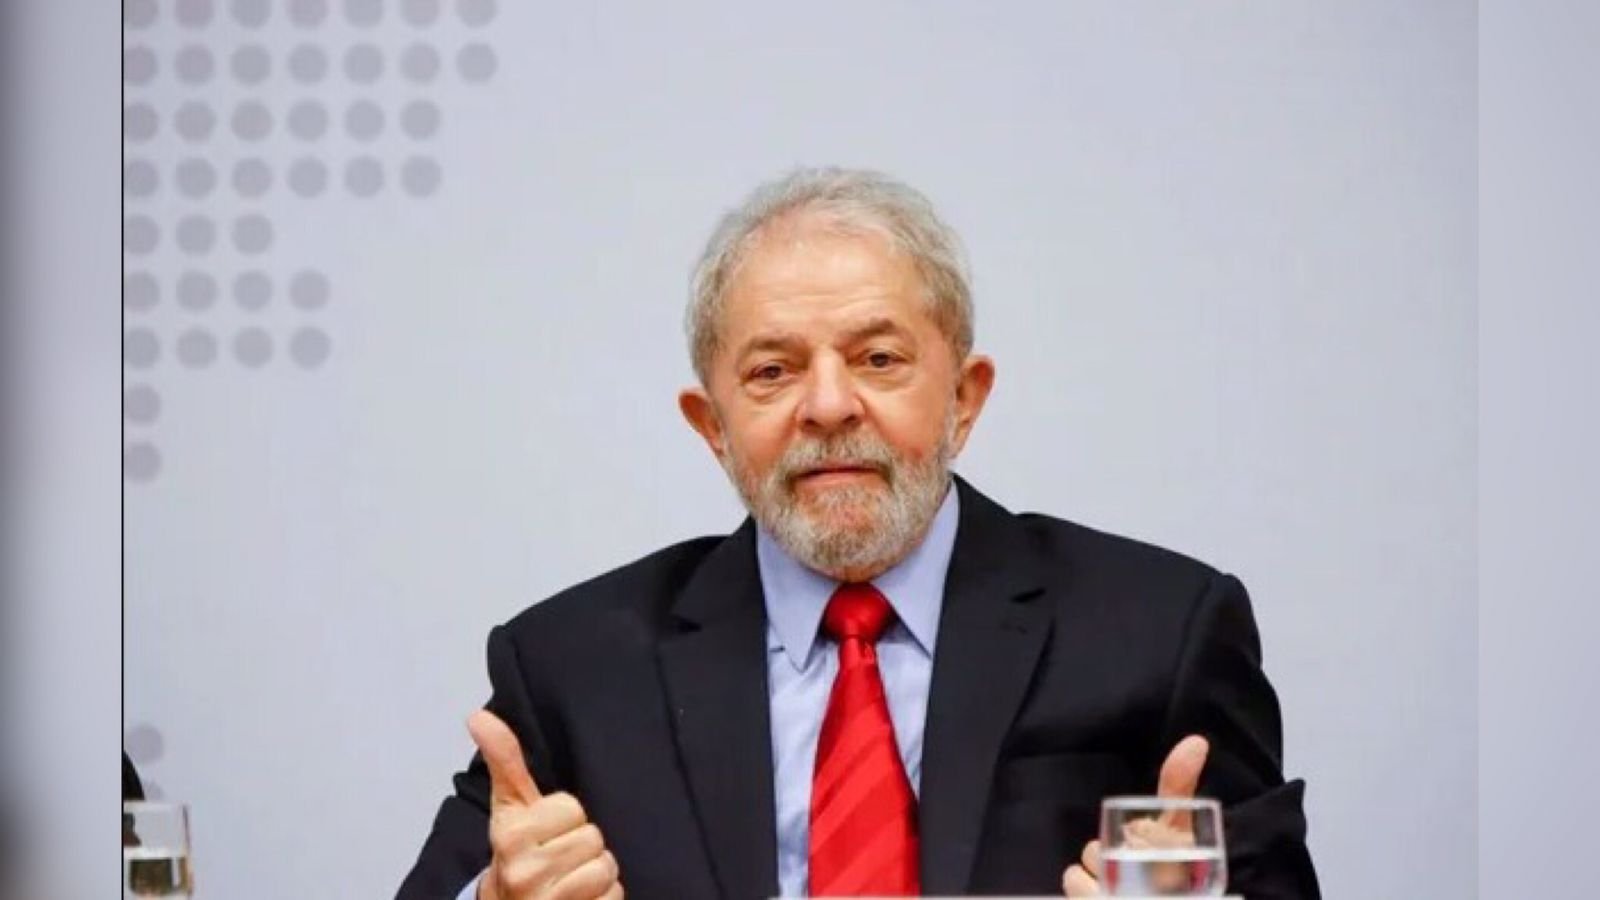 Na imagem, Lula aparece centralizado. Ele usa blazer escuro, camiseta azul e gravata vermelha. Há um copo ao lado dele e suas mãos estão para cima e estão fazendo o sinal de "jóia" - Metrópoles